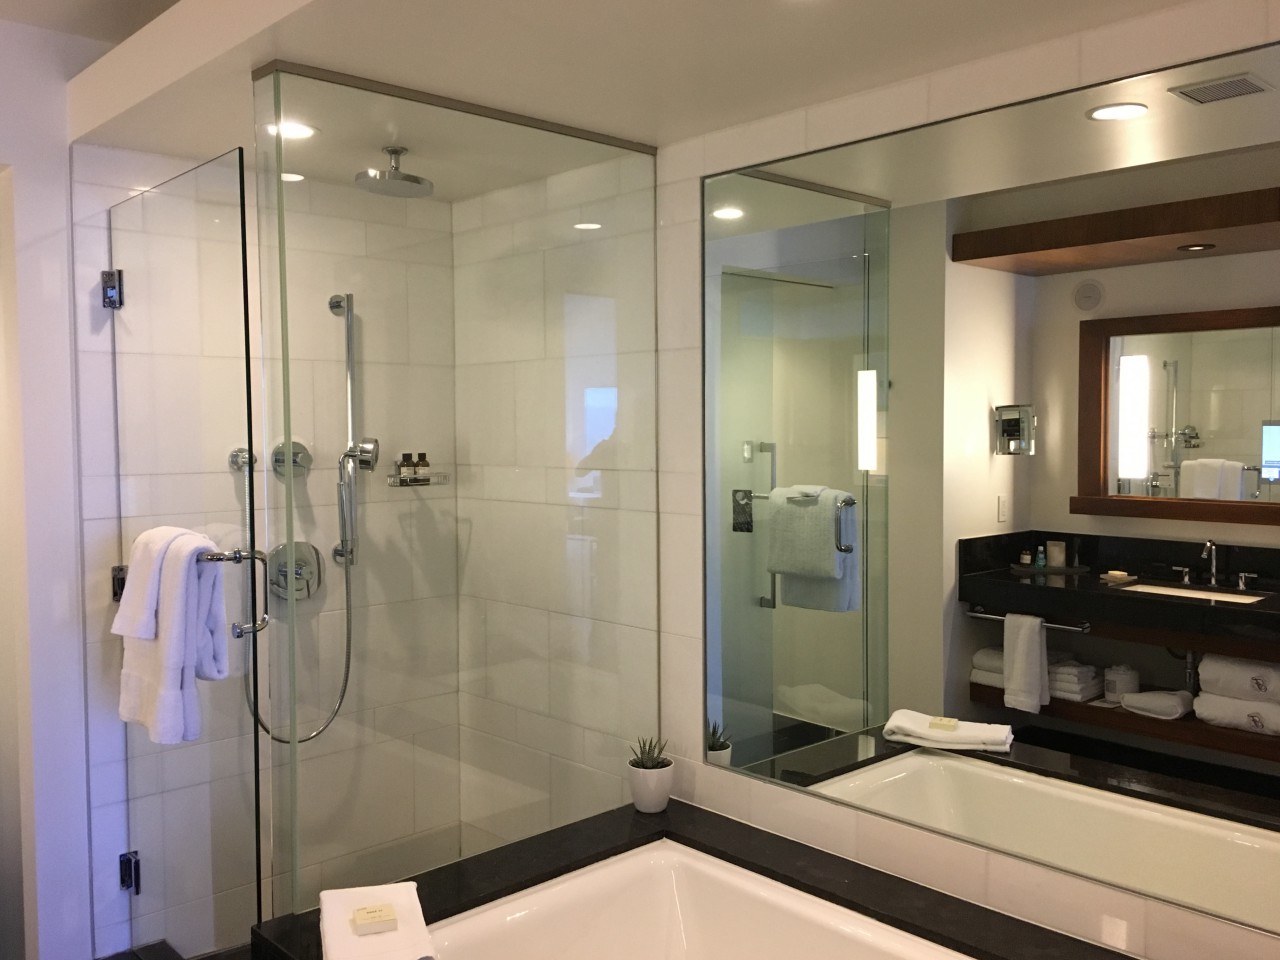 Fairmont Gold Bathroom, Fairmont Pacific Rim Review